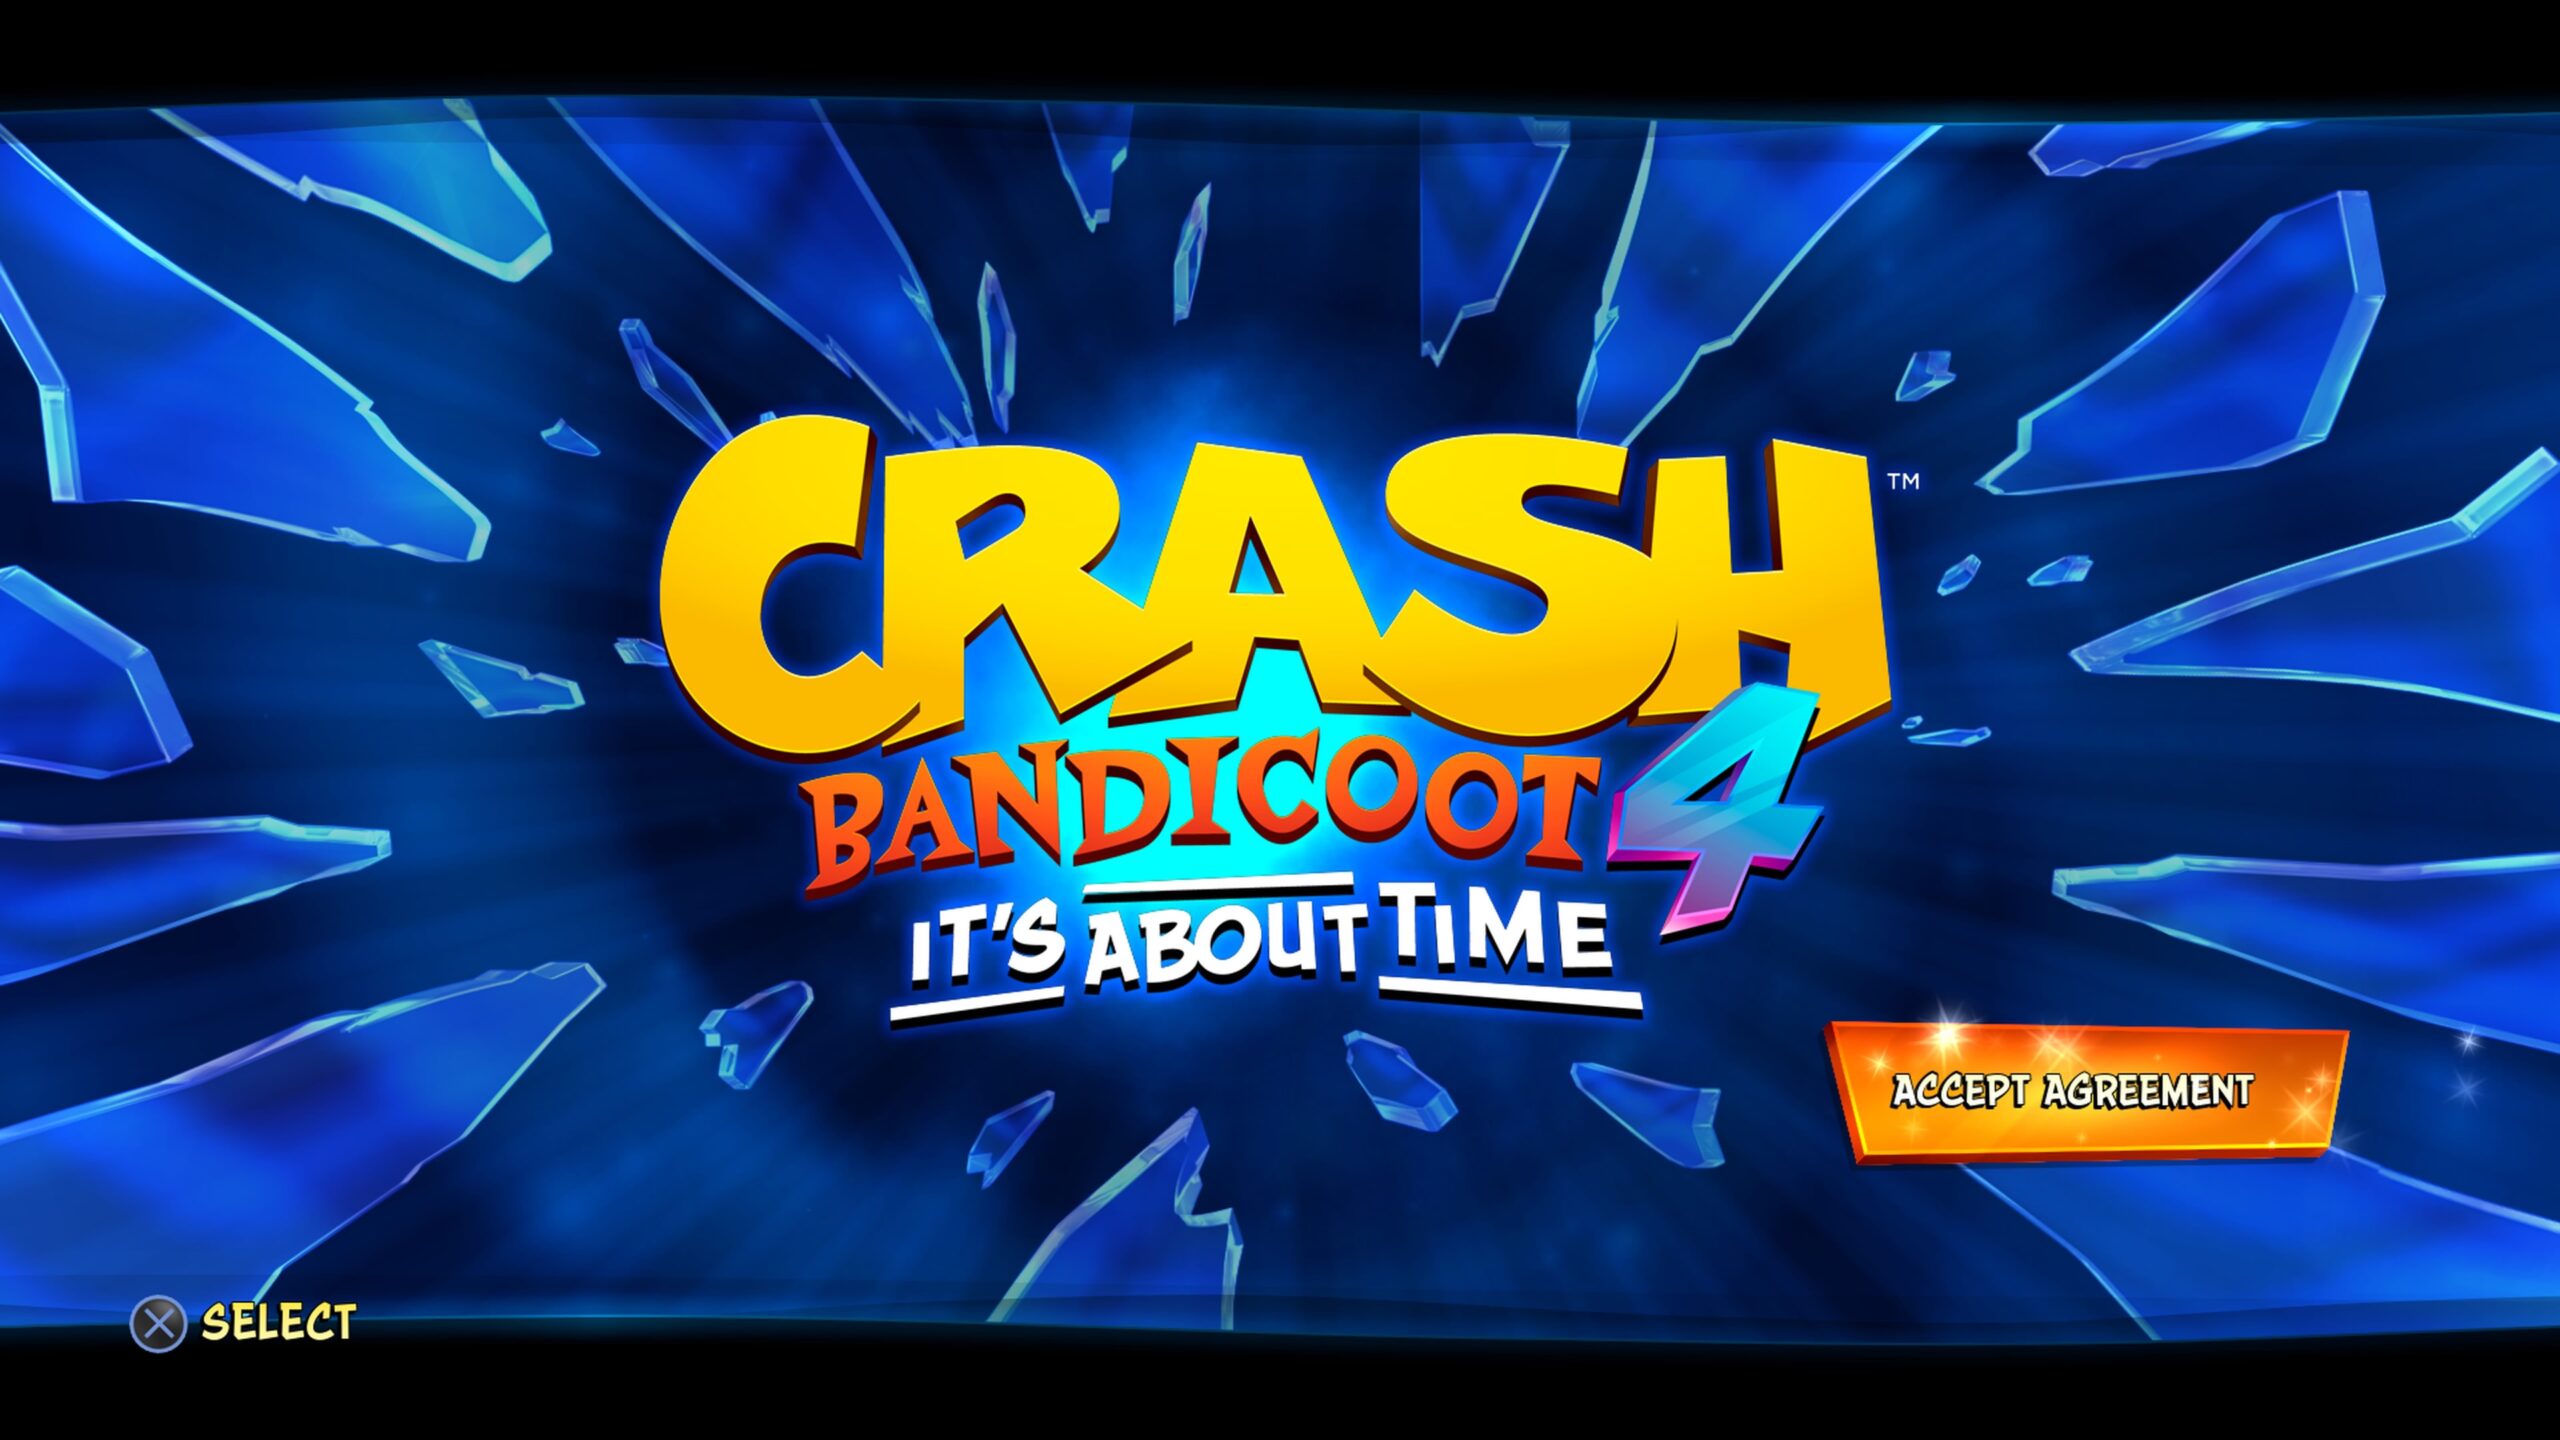 Crash Bandicoot™ 4: It's About Time, crash bandicoot 4